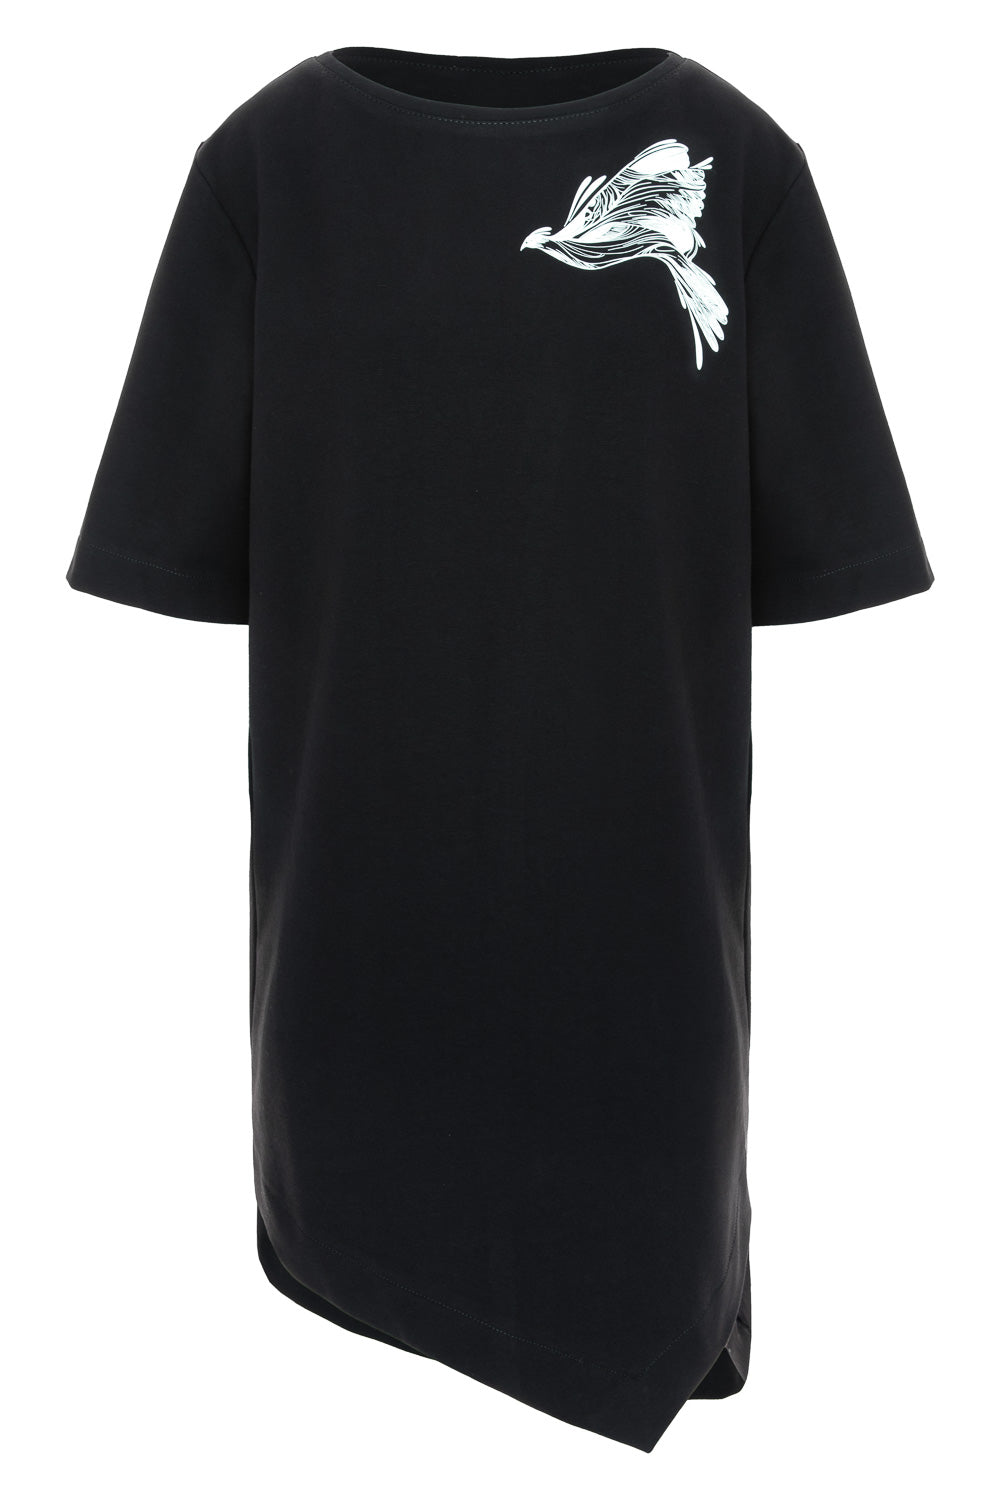 Rochie-tricou neagra cu imprimeu Tweetie